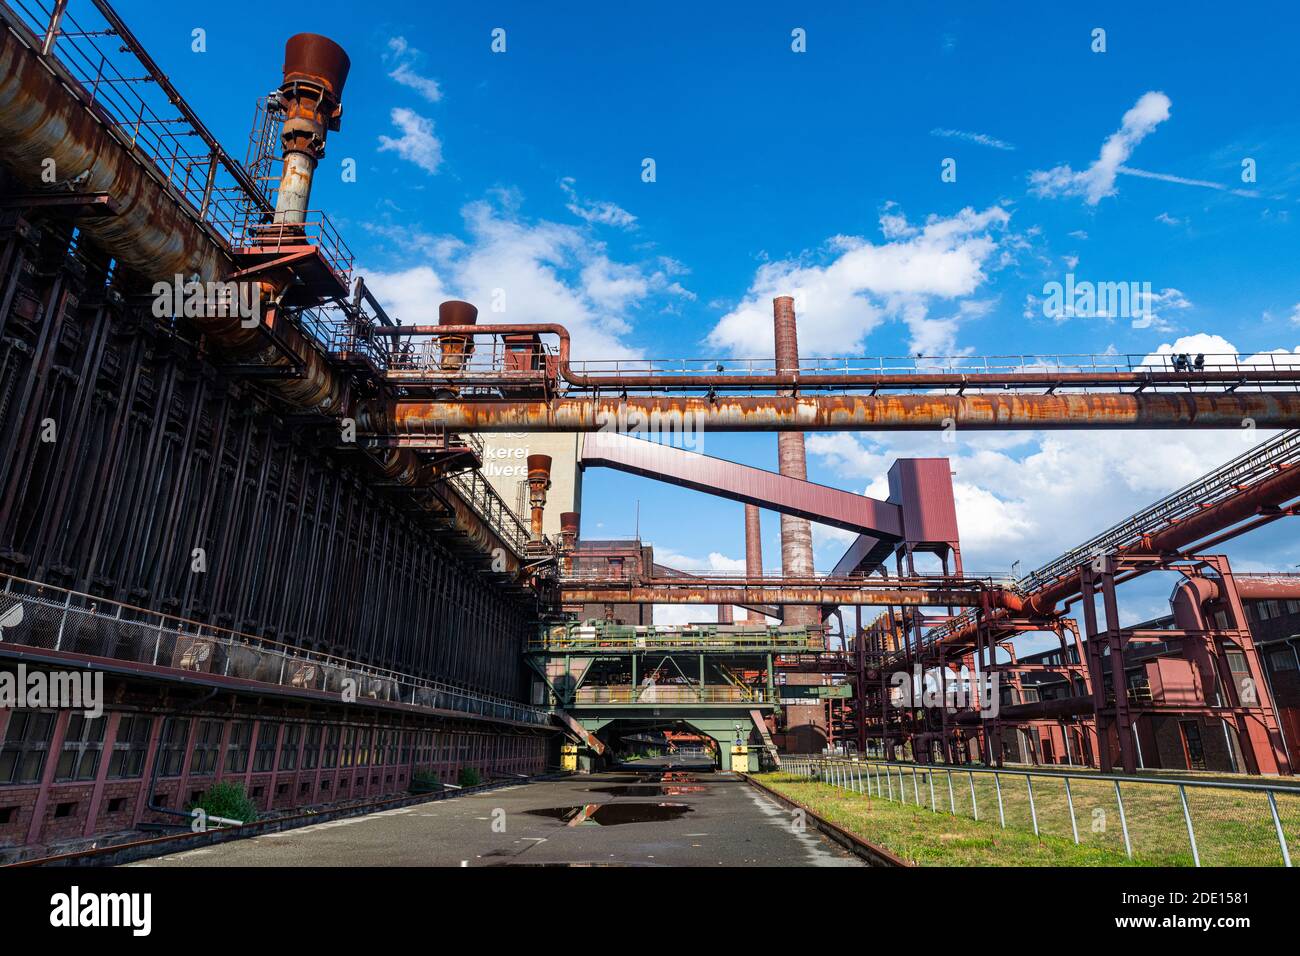 Impianto di coking, complesso industriale della miniera di carbone di Zollverein, patrimonio dell'umanità dell'UNESCO, Essen, Ruhr, Renania settentrionale-Vestfalia, Germania, Europa Foto Stock